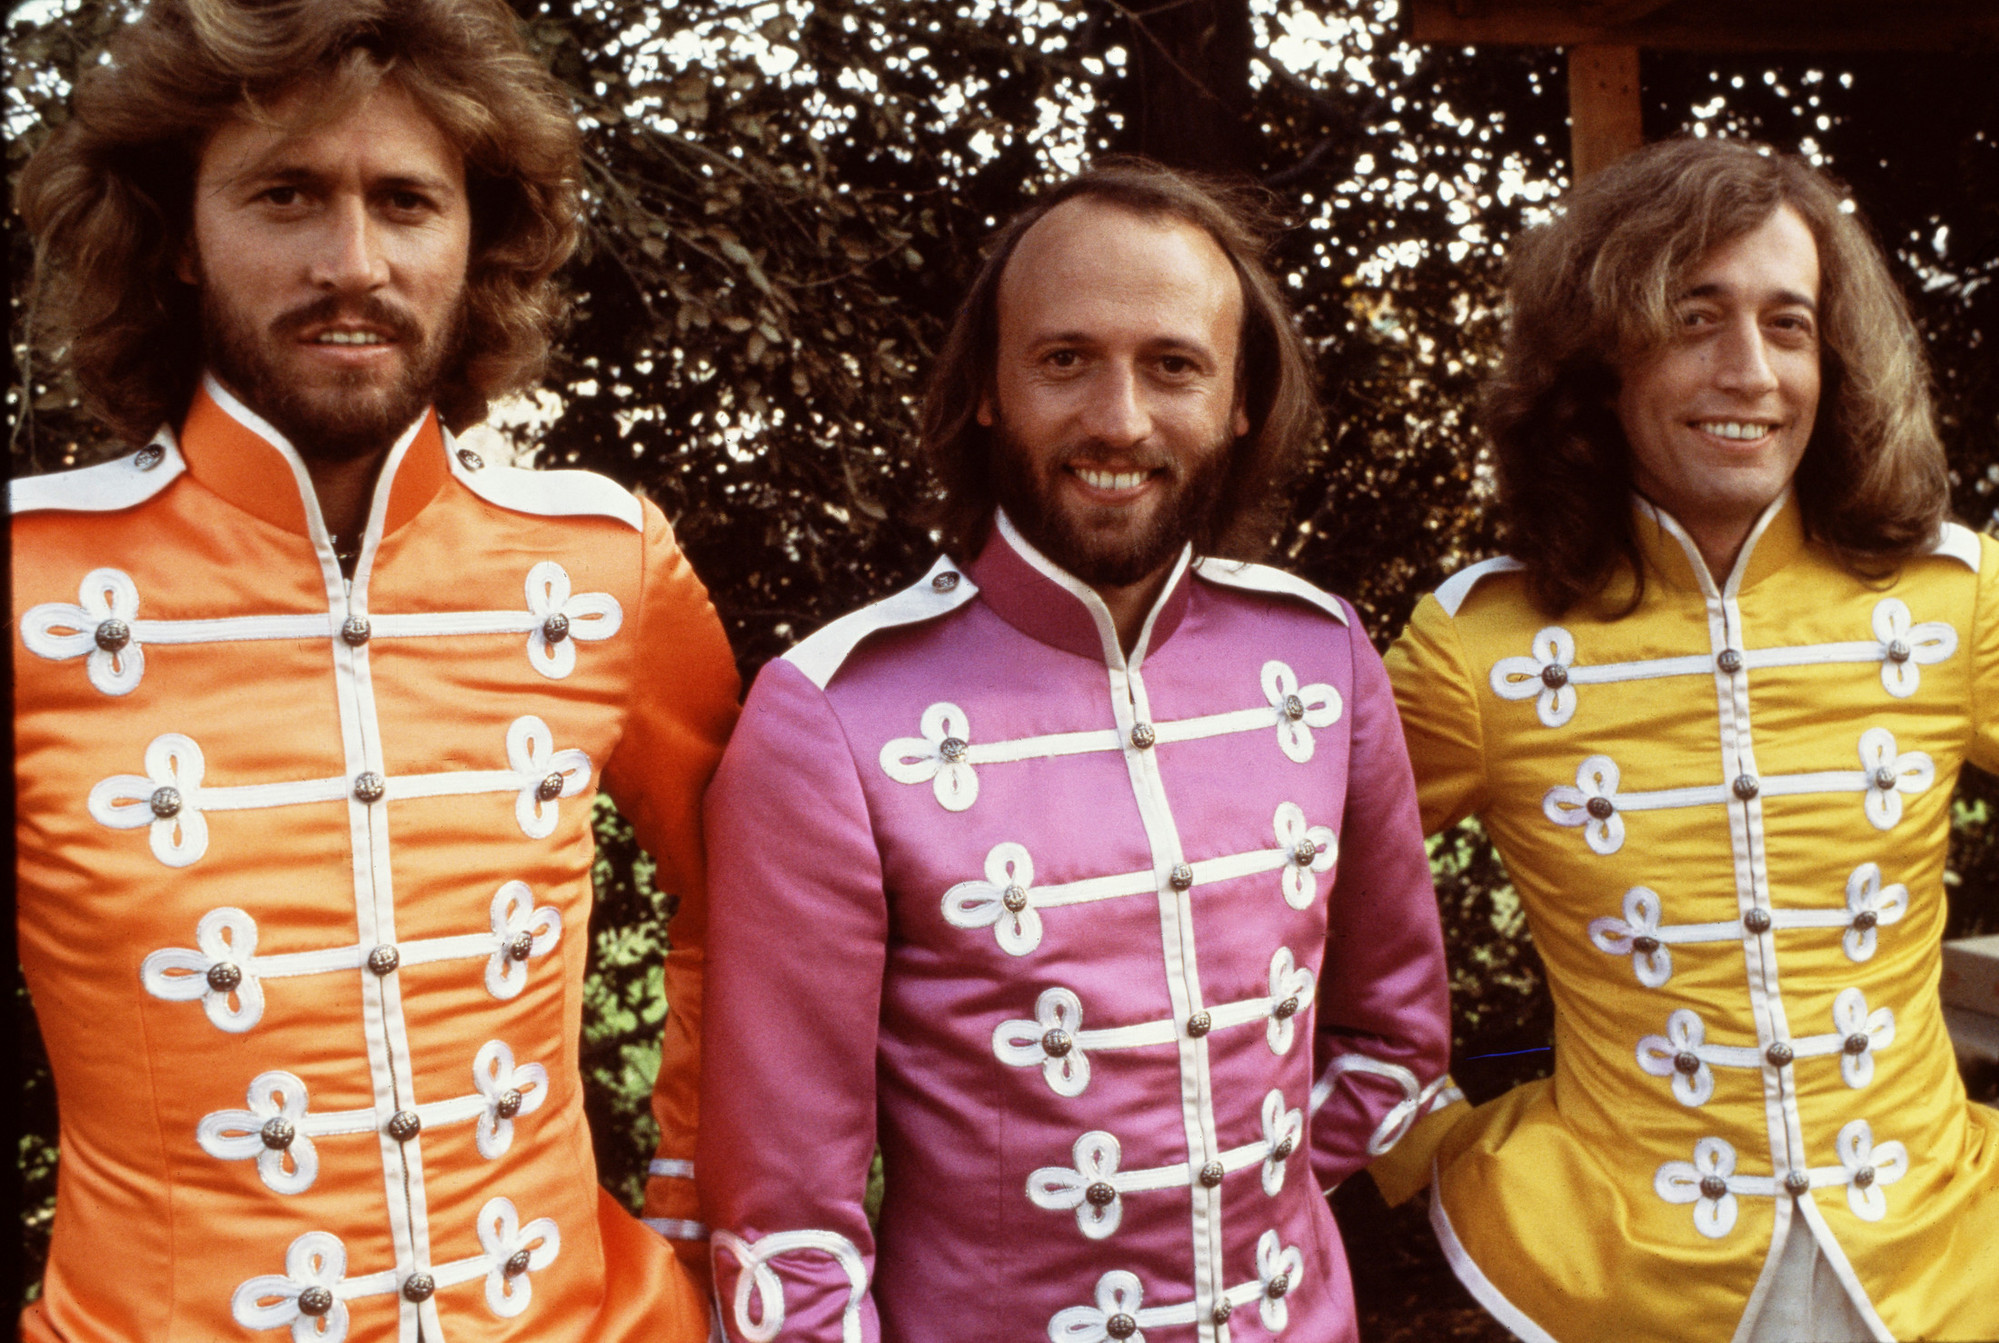 El masaje cardiaco al ritmo de los Bee Gees salva más vidas